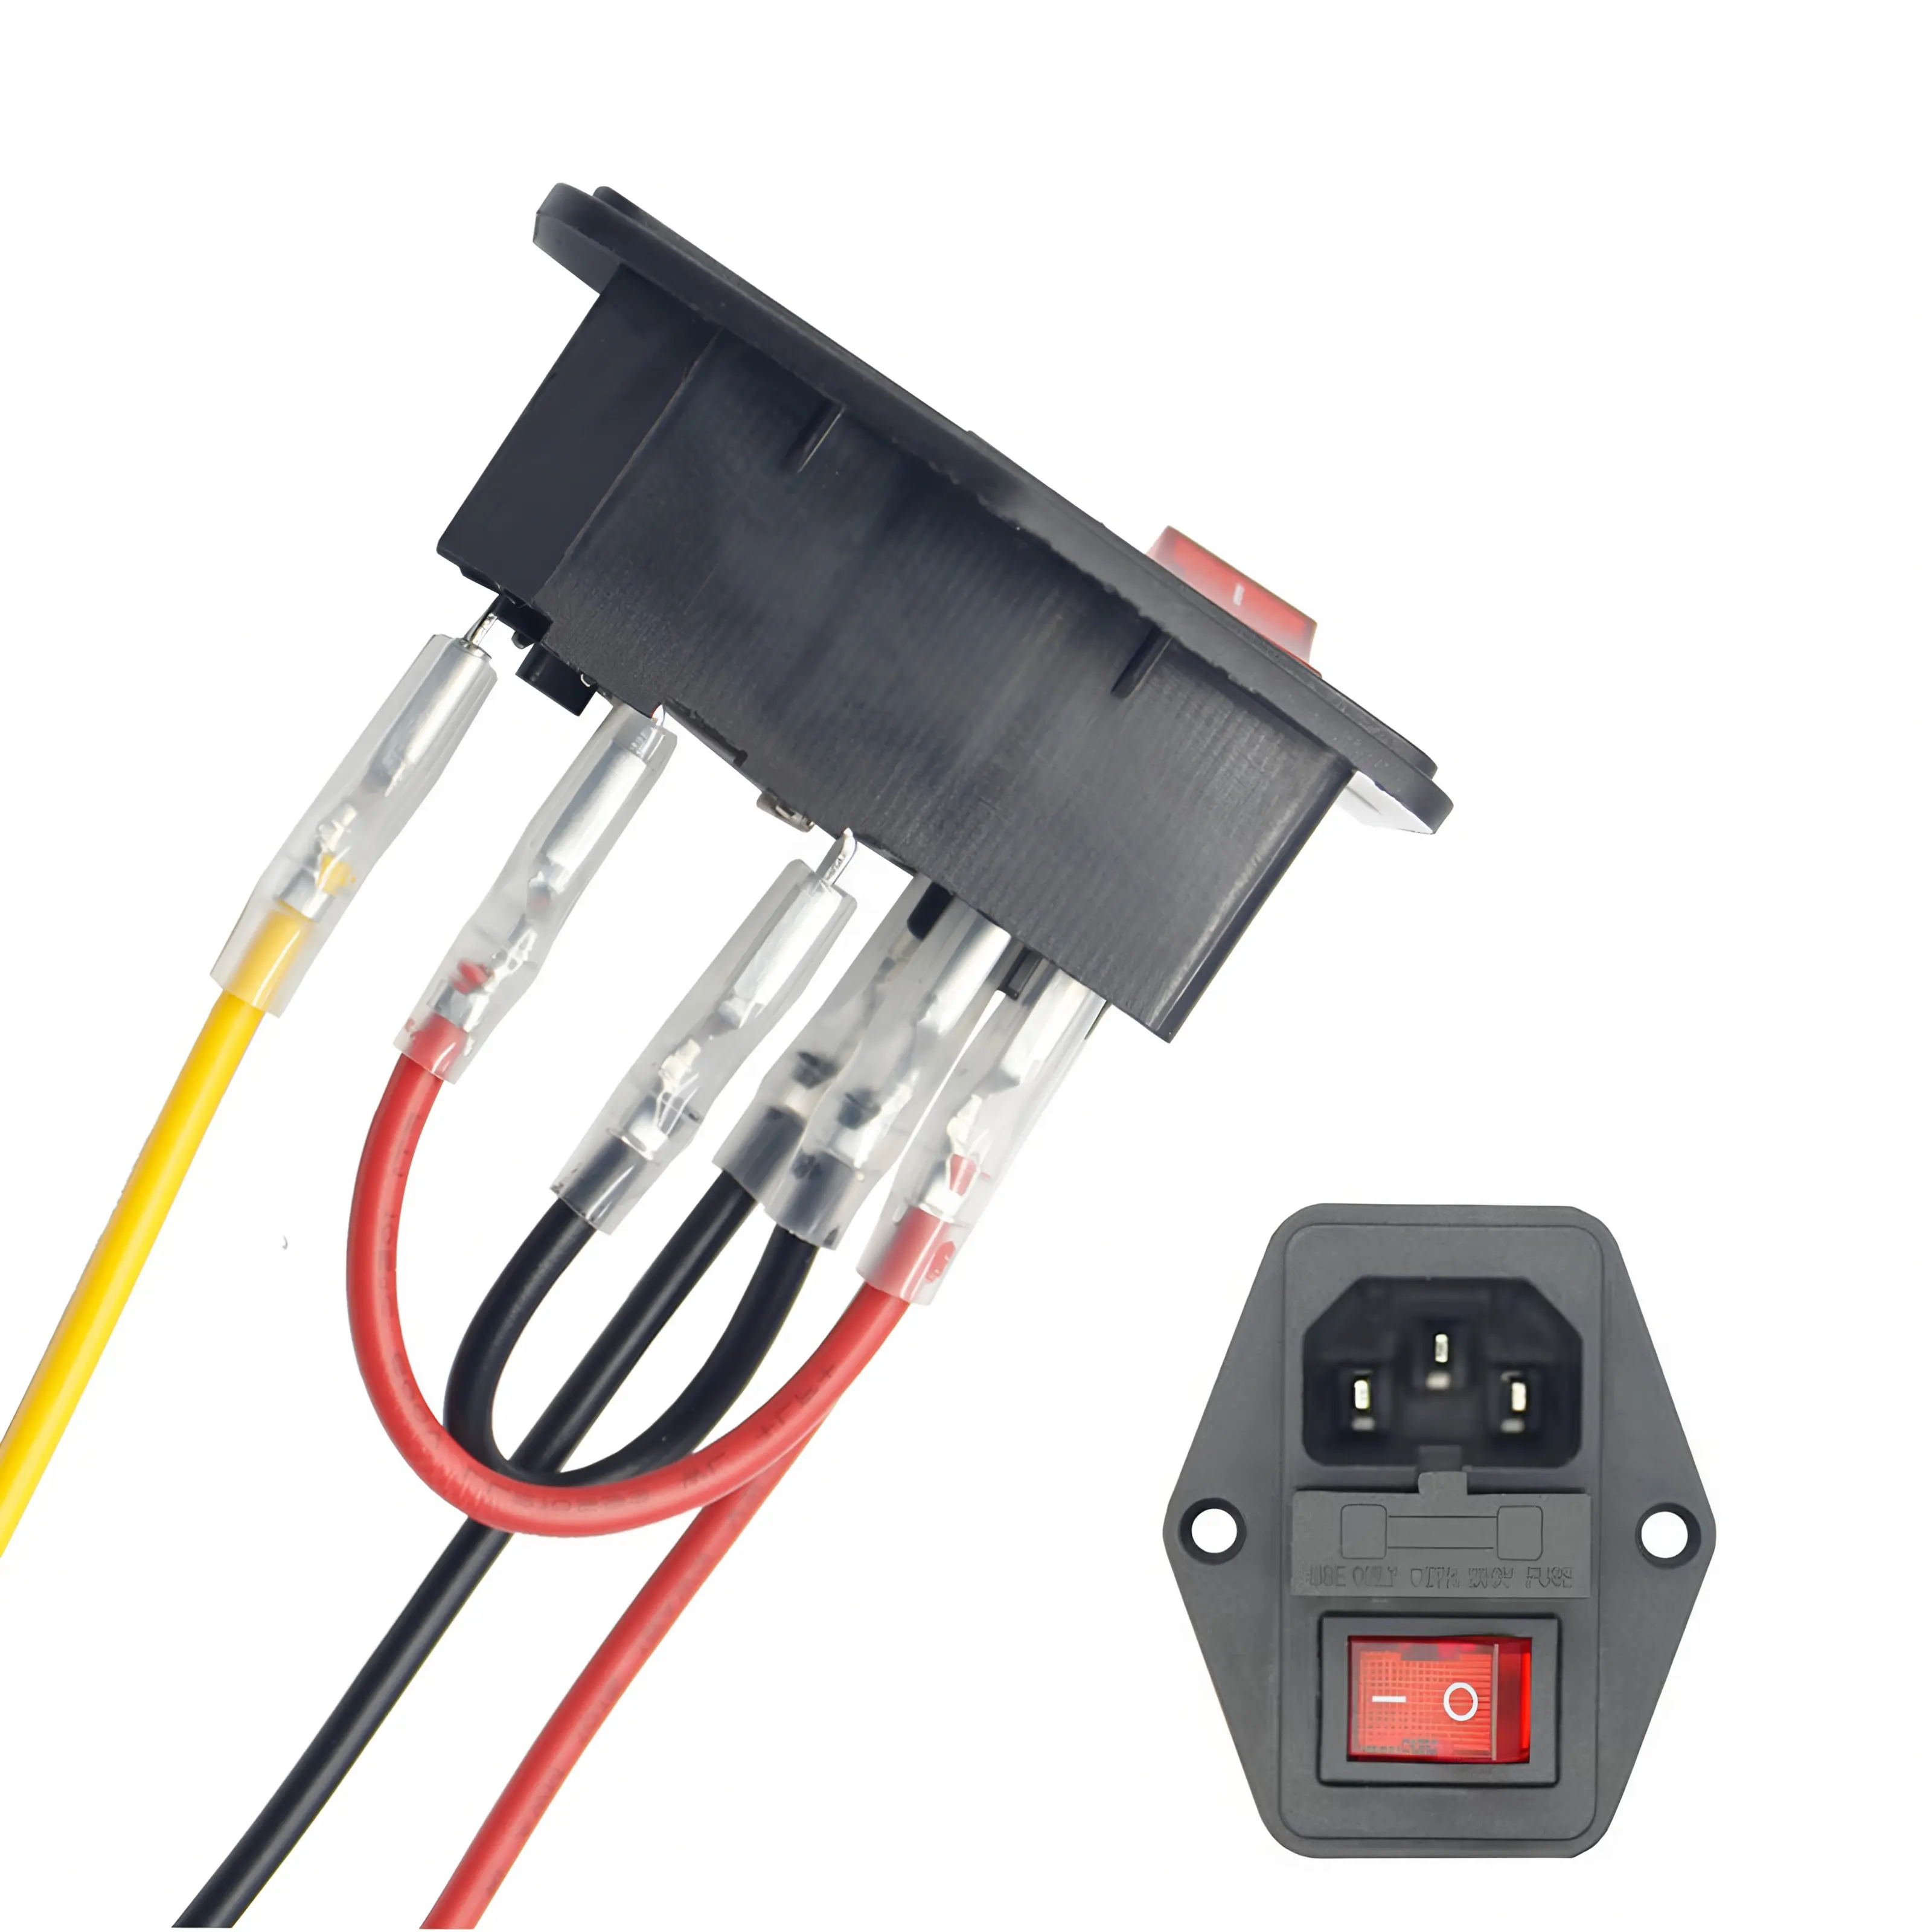 Toma de conector de alimentación 3 en 1 Toma de corriente IEC C14 con interruptor basculante de encendido y apagado Indicador rojo y tipo de cable